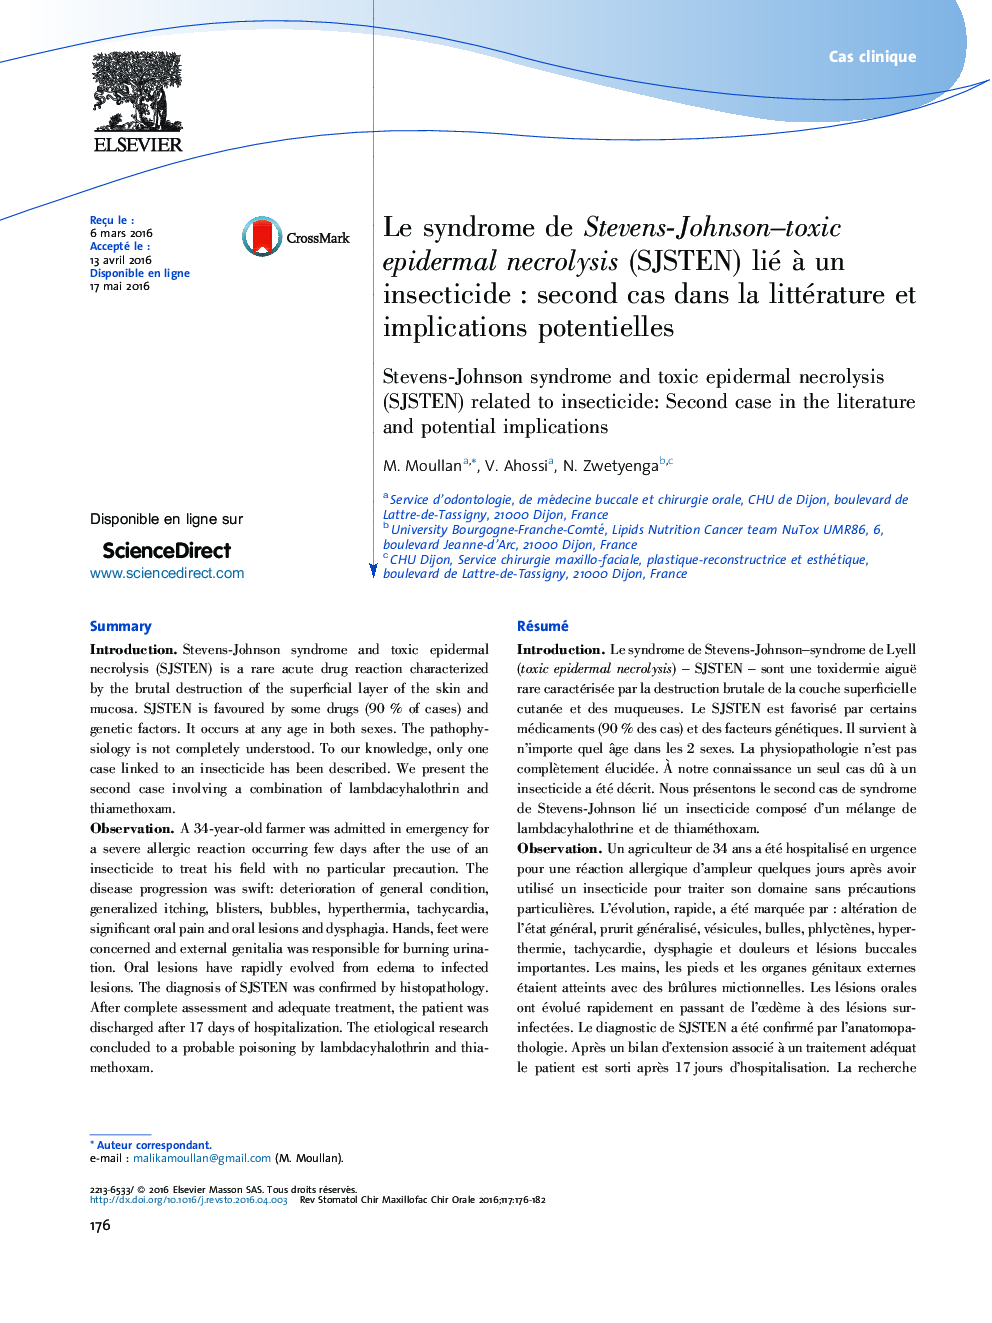 Le syndrome de Stevens-Johnson-toxic epidermal necrolysis (SJSTEN) lié Ã  un insecticideÂ : second cas dans la littérature et implications potentielles